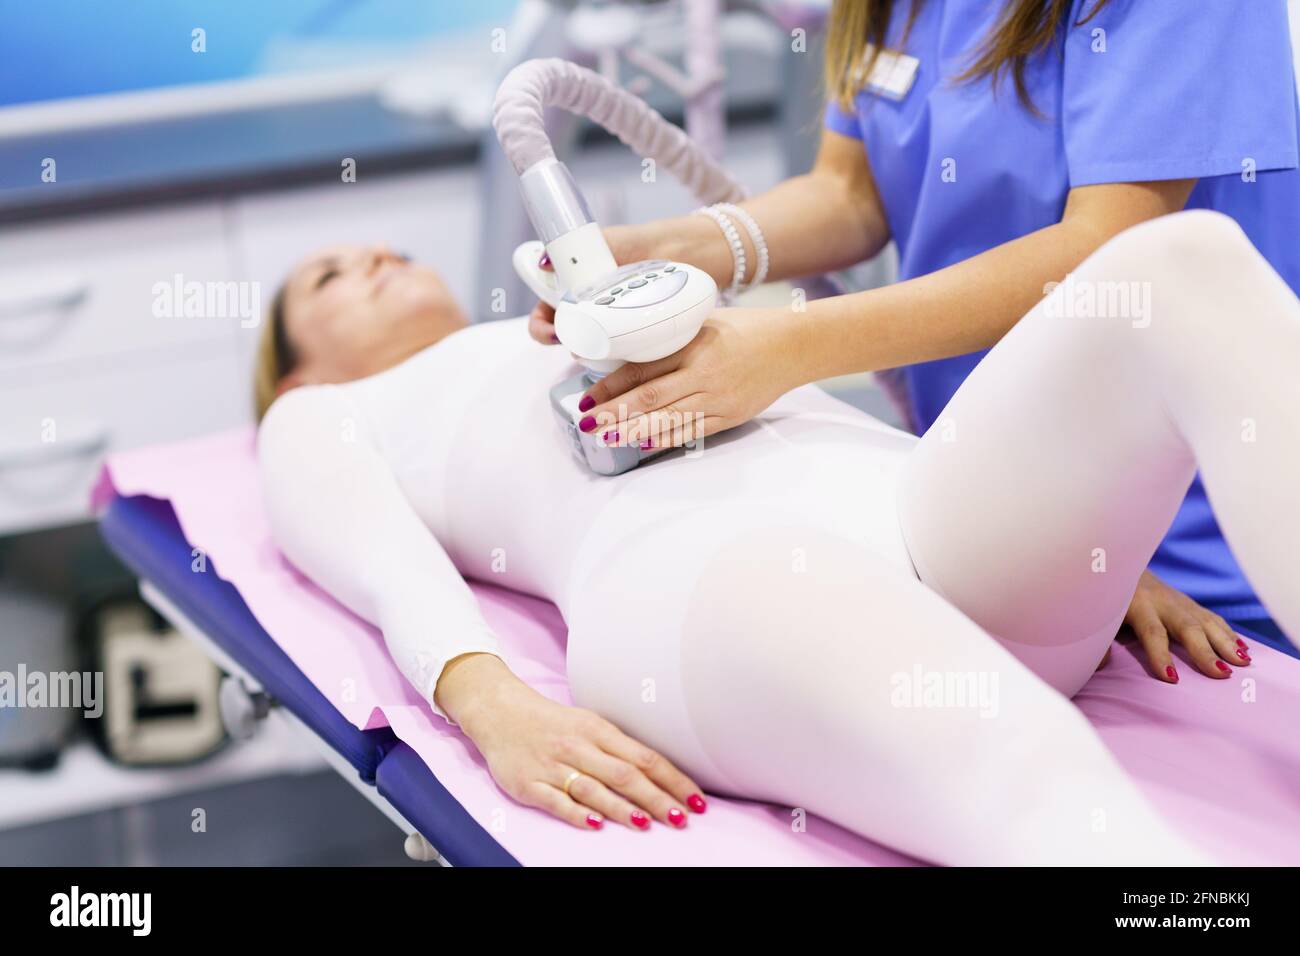 Frau im Spezialanzug mit einer Anti-Cellulite-Bauchmassage Mit Spa-Gerät  Stockfotografie - Alamy